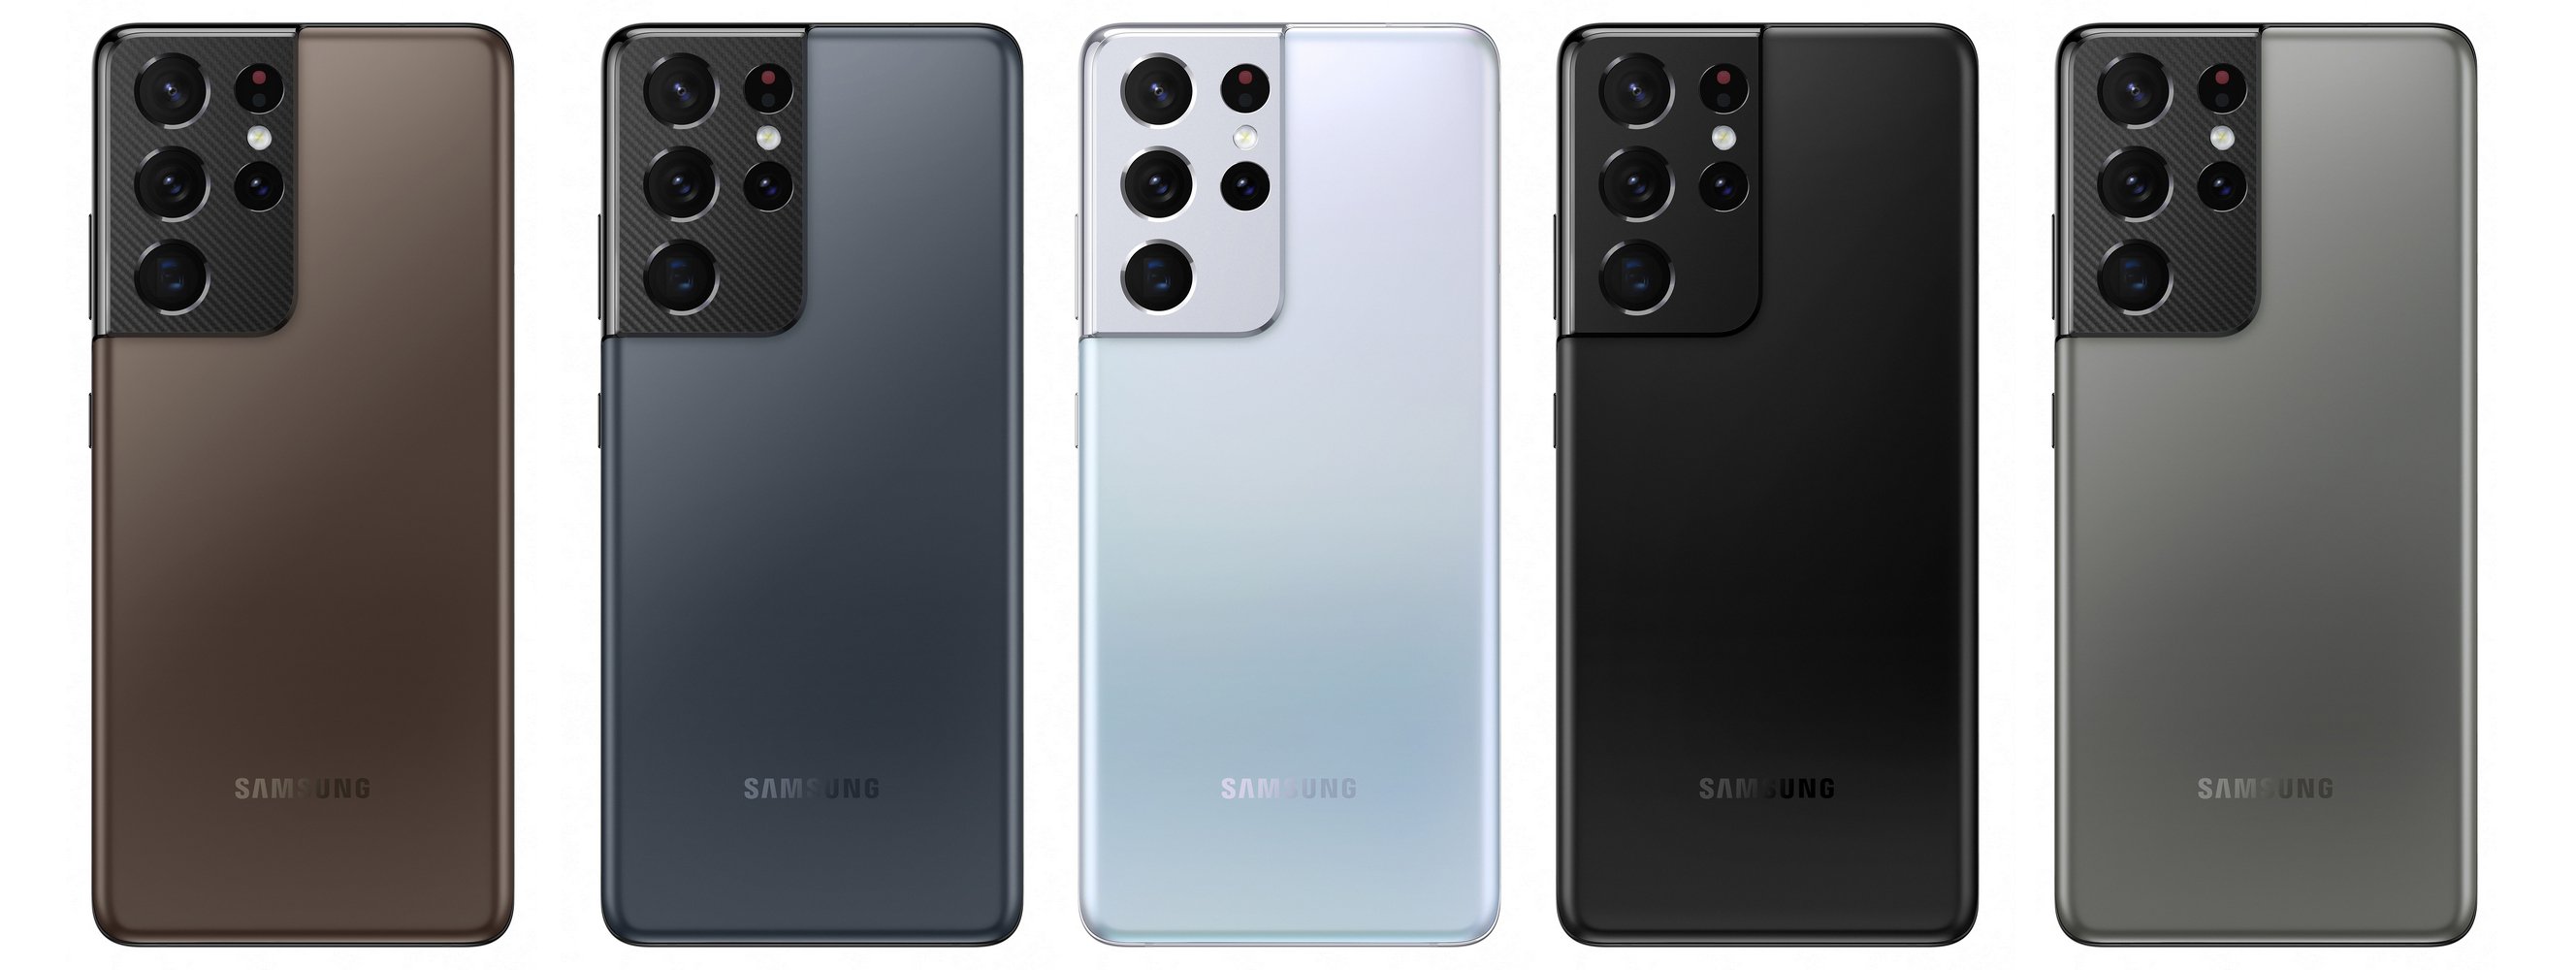 Samsung-Galaxy-S21-Ultra-5G-728.jpg